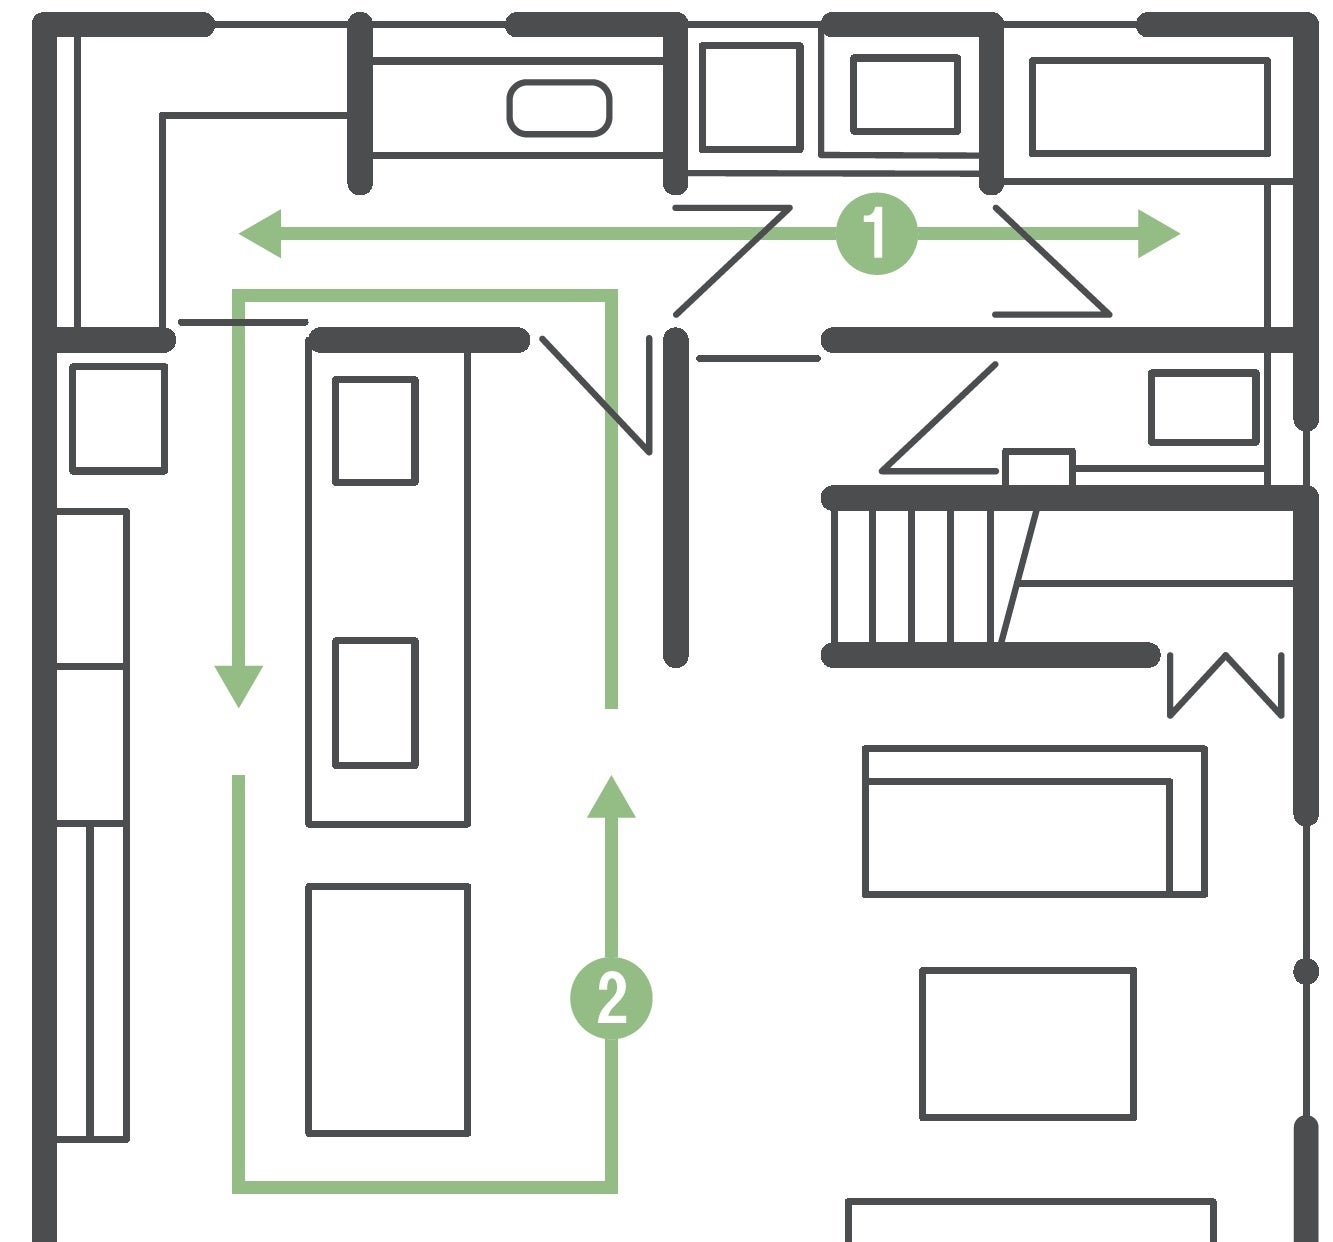 プロの「おすすめ」を満載した、新時代の企画住宅「SMART STYLE Roomie」を新発売のサブ画像7